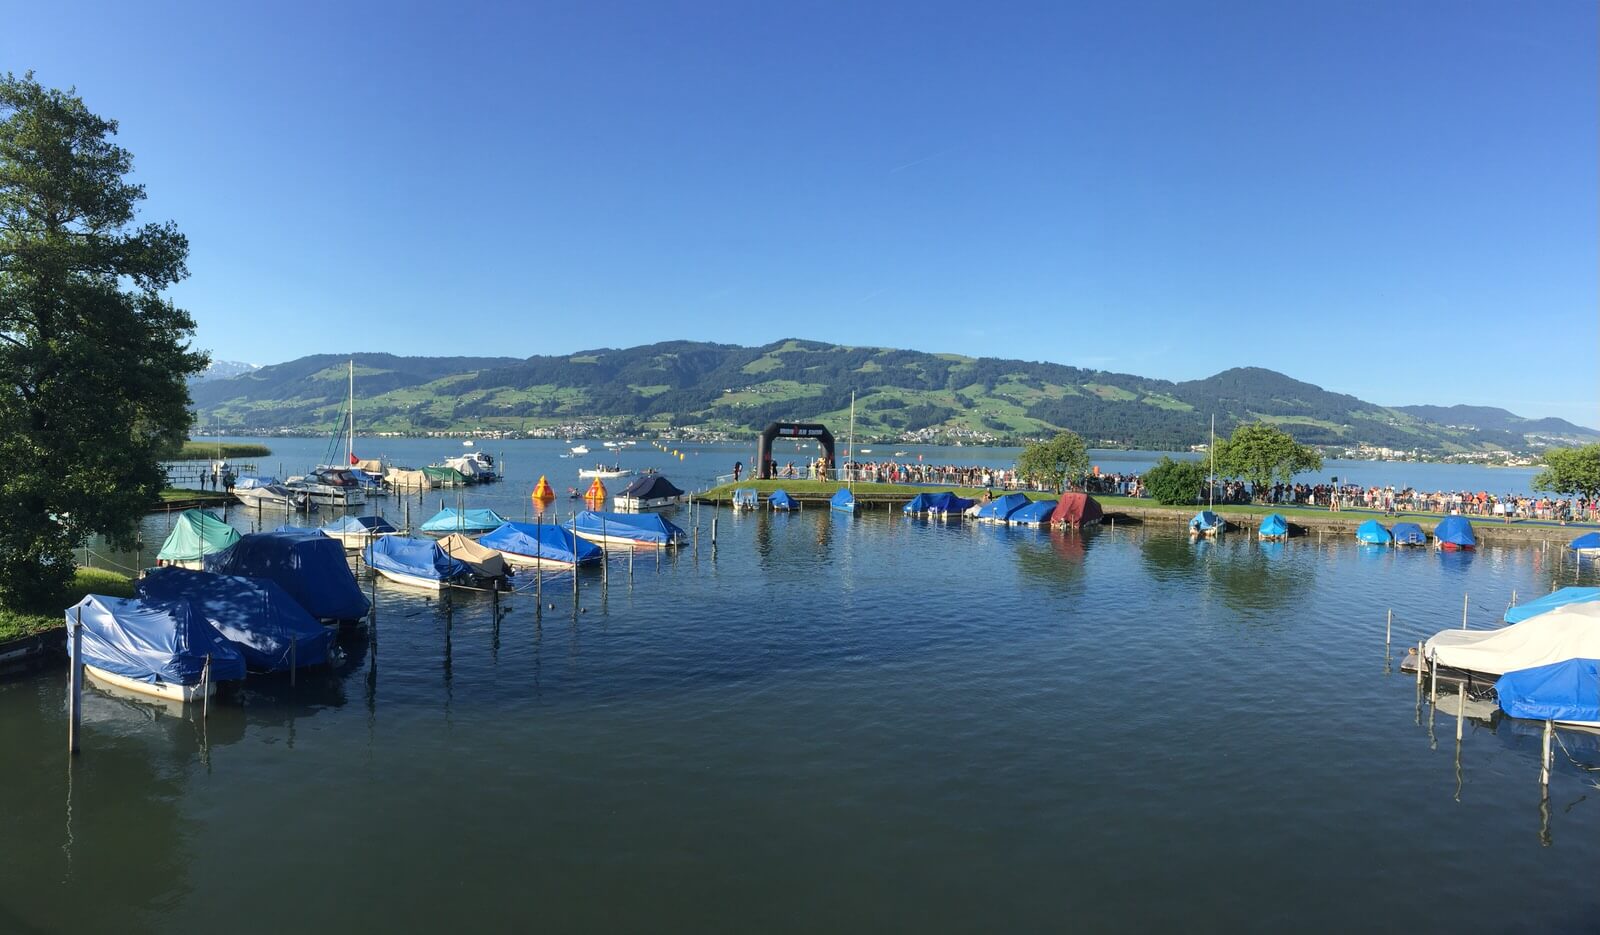 Lake of Zürich